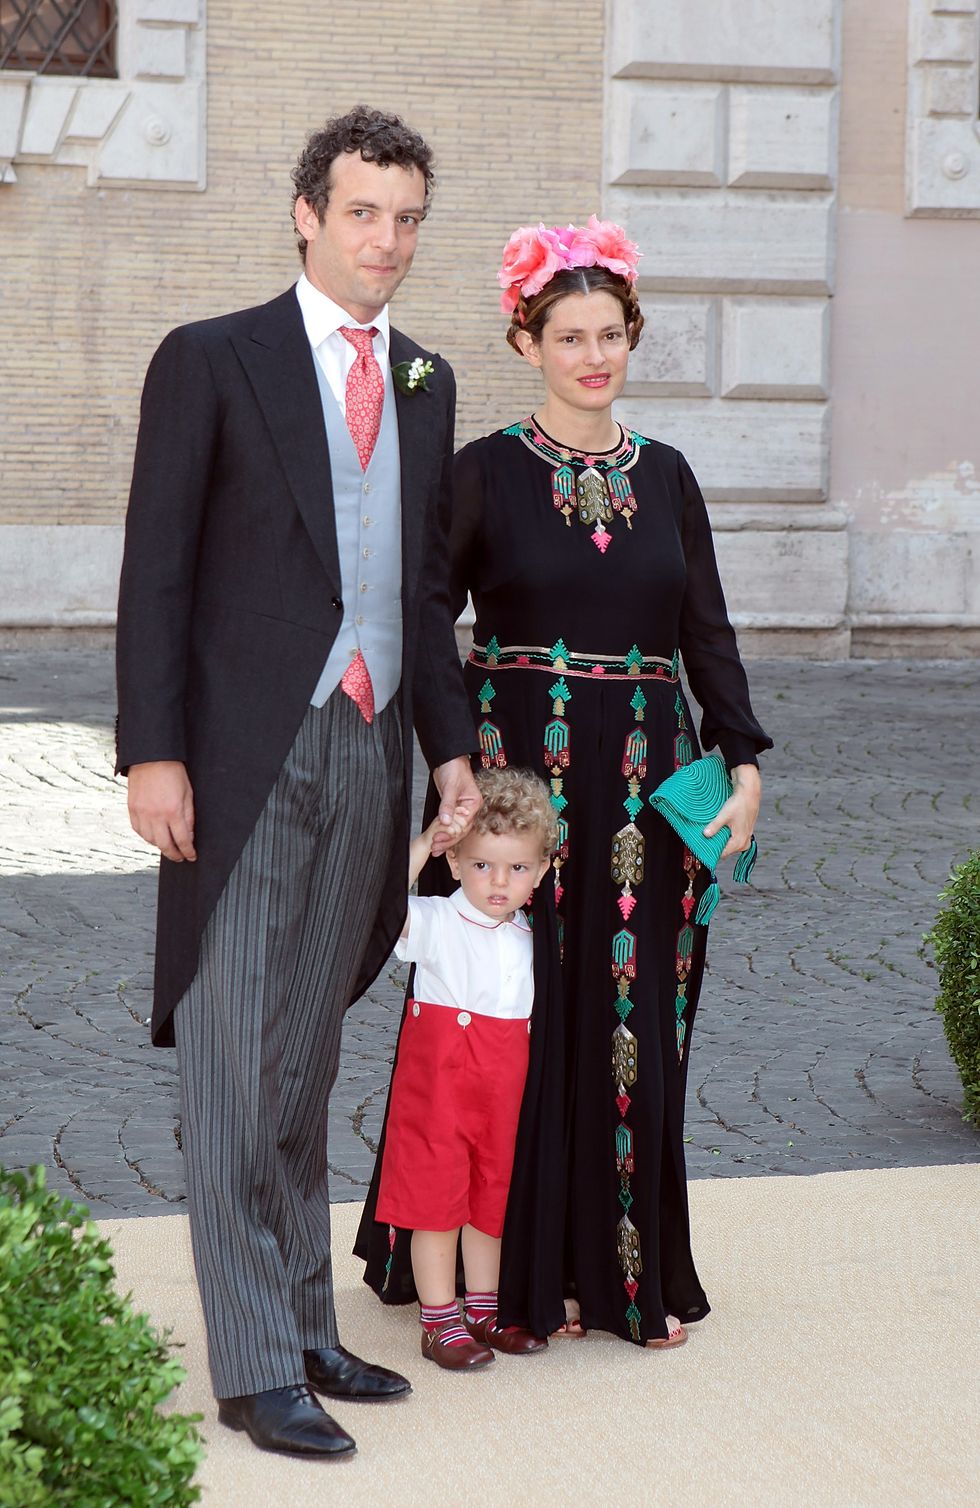 wedding of prince amedeo of belgium and elisabetta maria rosboch von wolkenstein